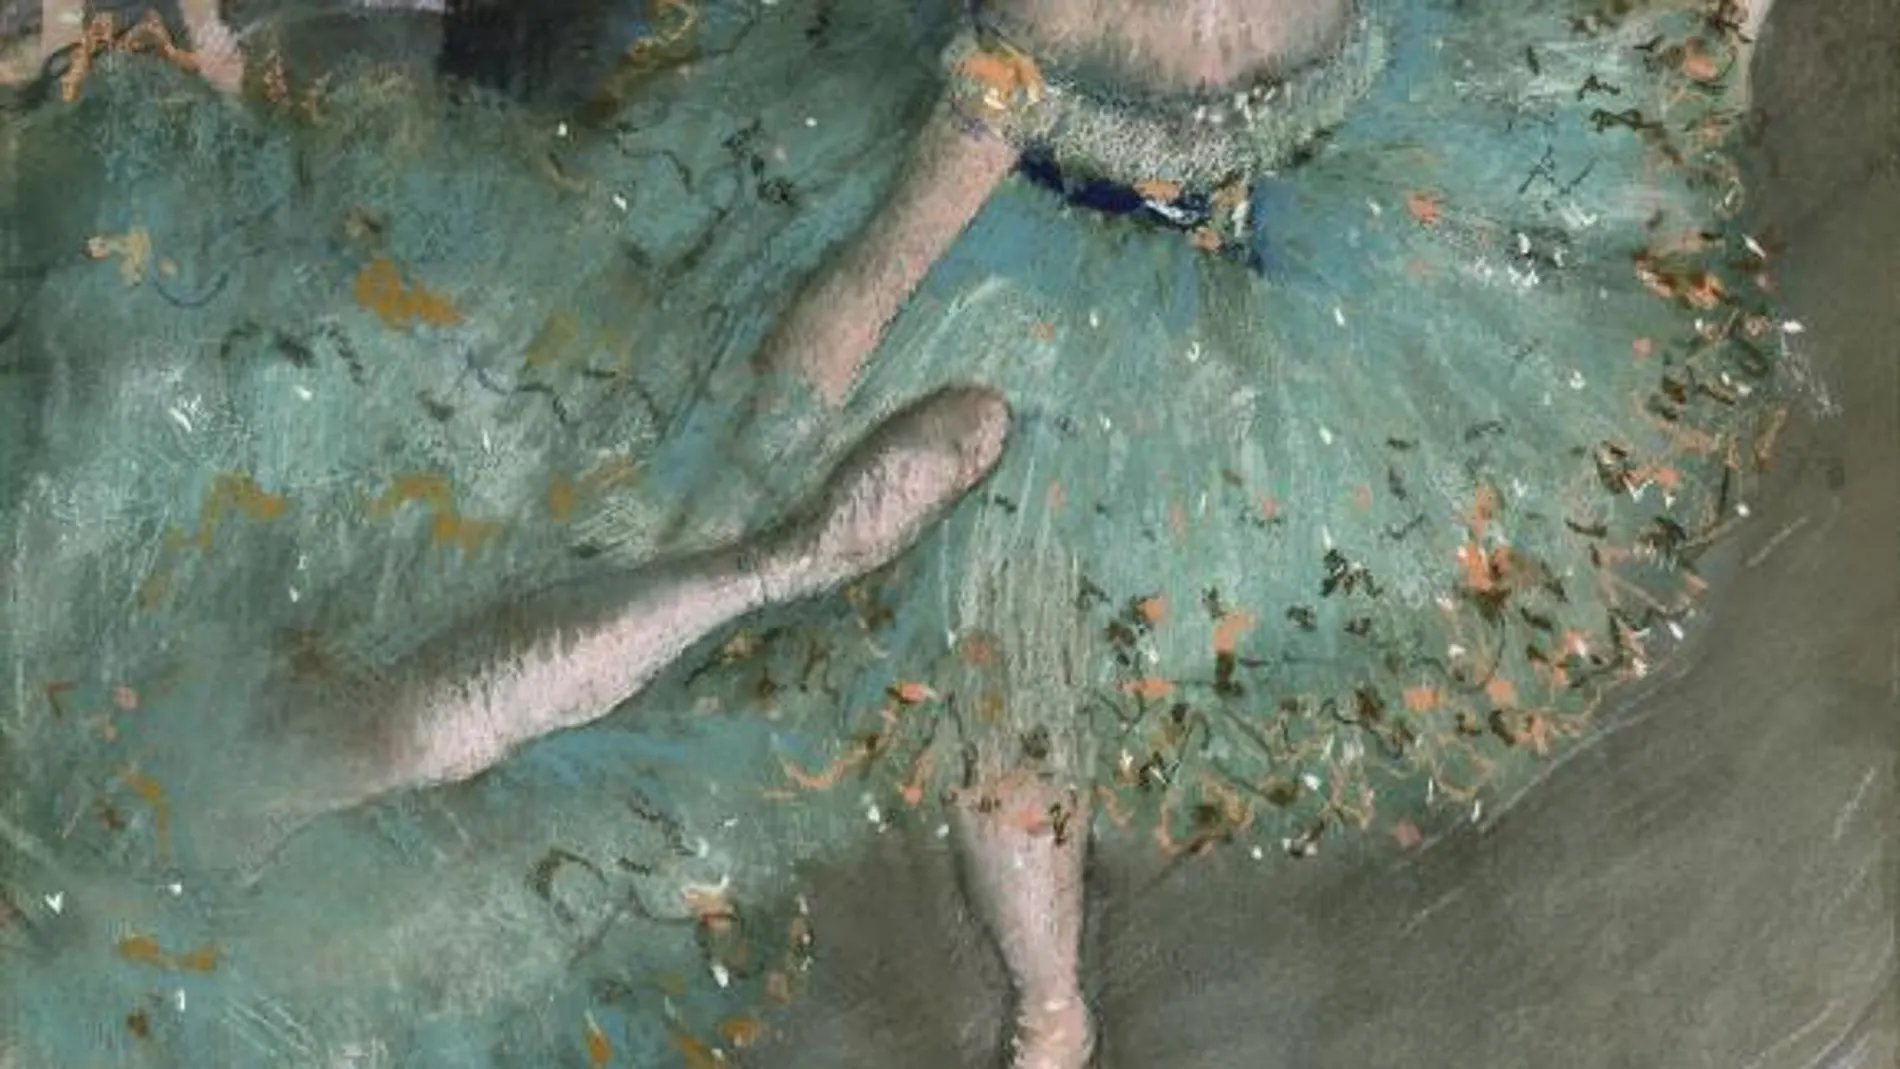 Bailarina basculando, de Edgar Degas (1877-1879)